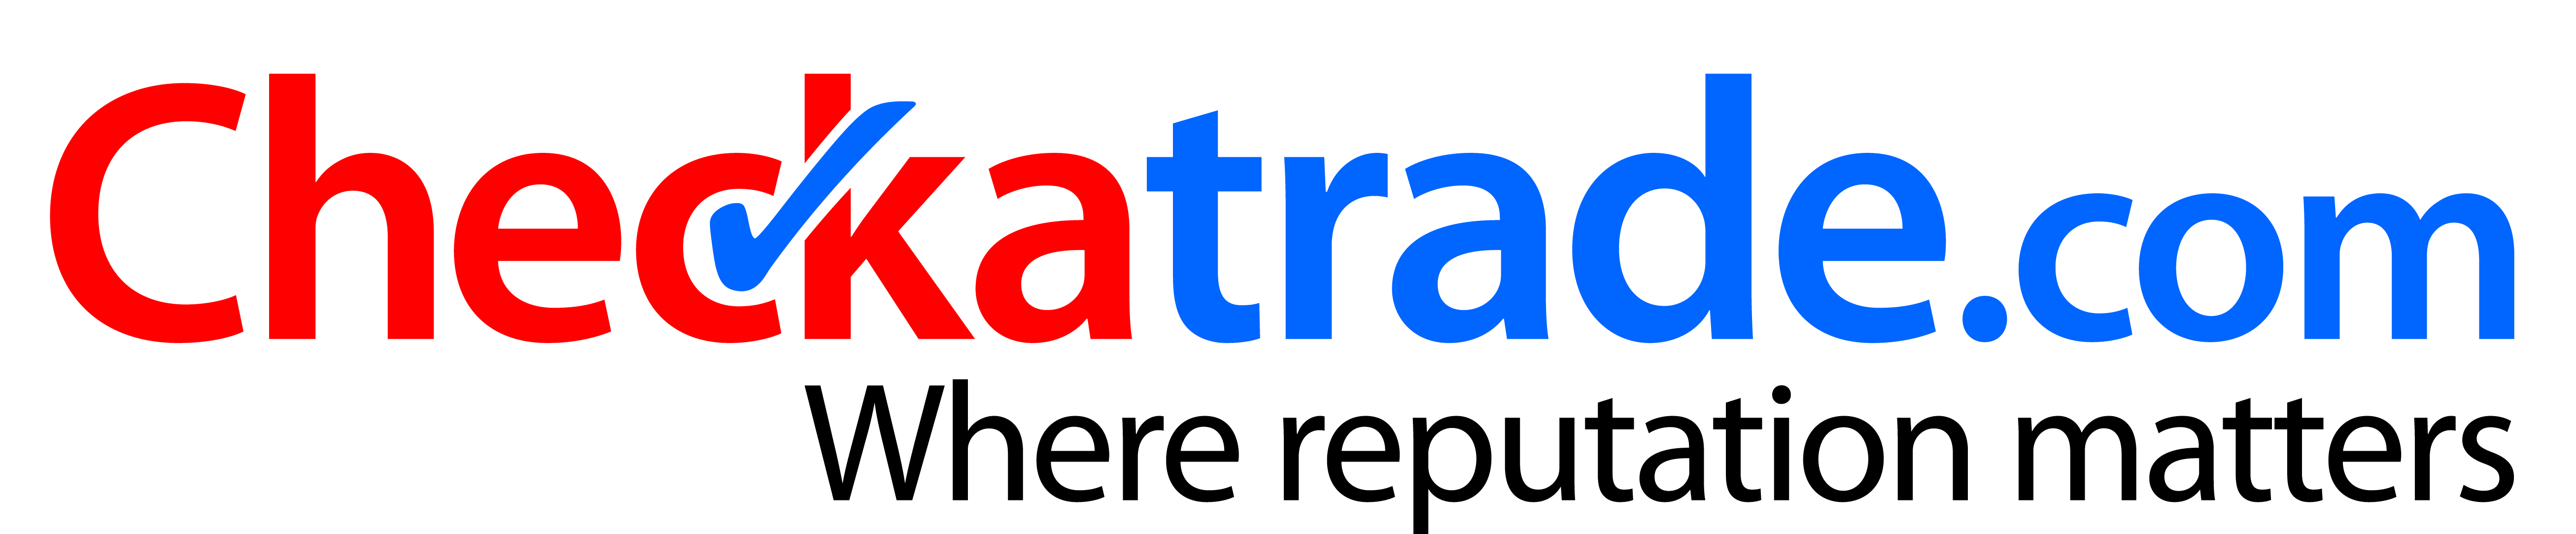 checkatrade_logo